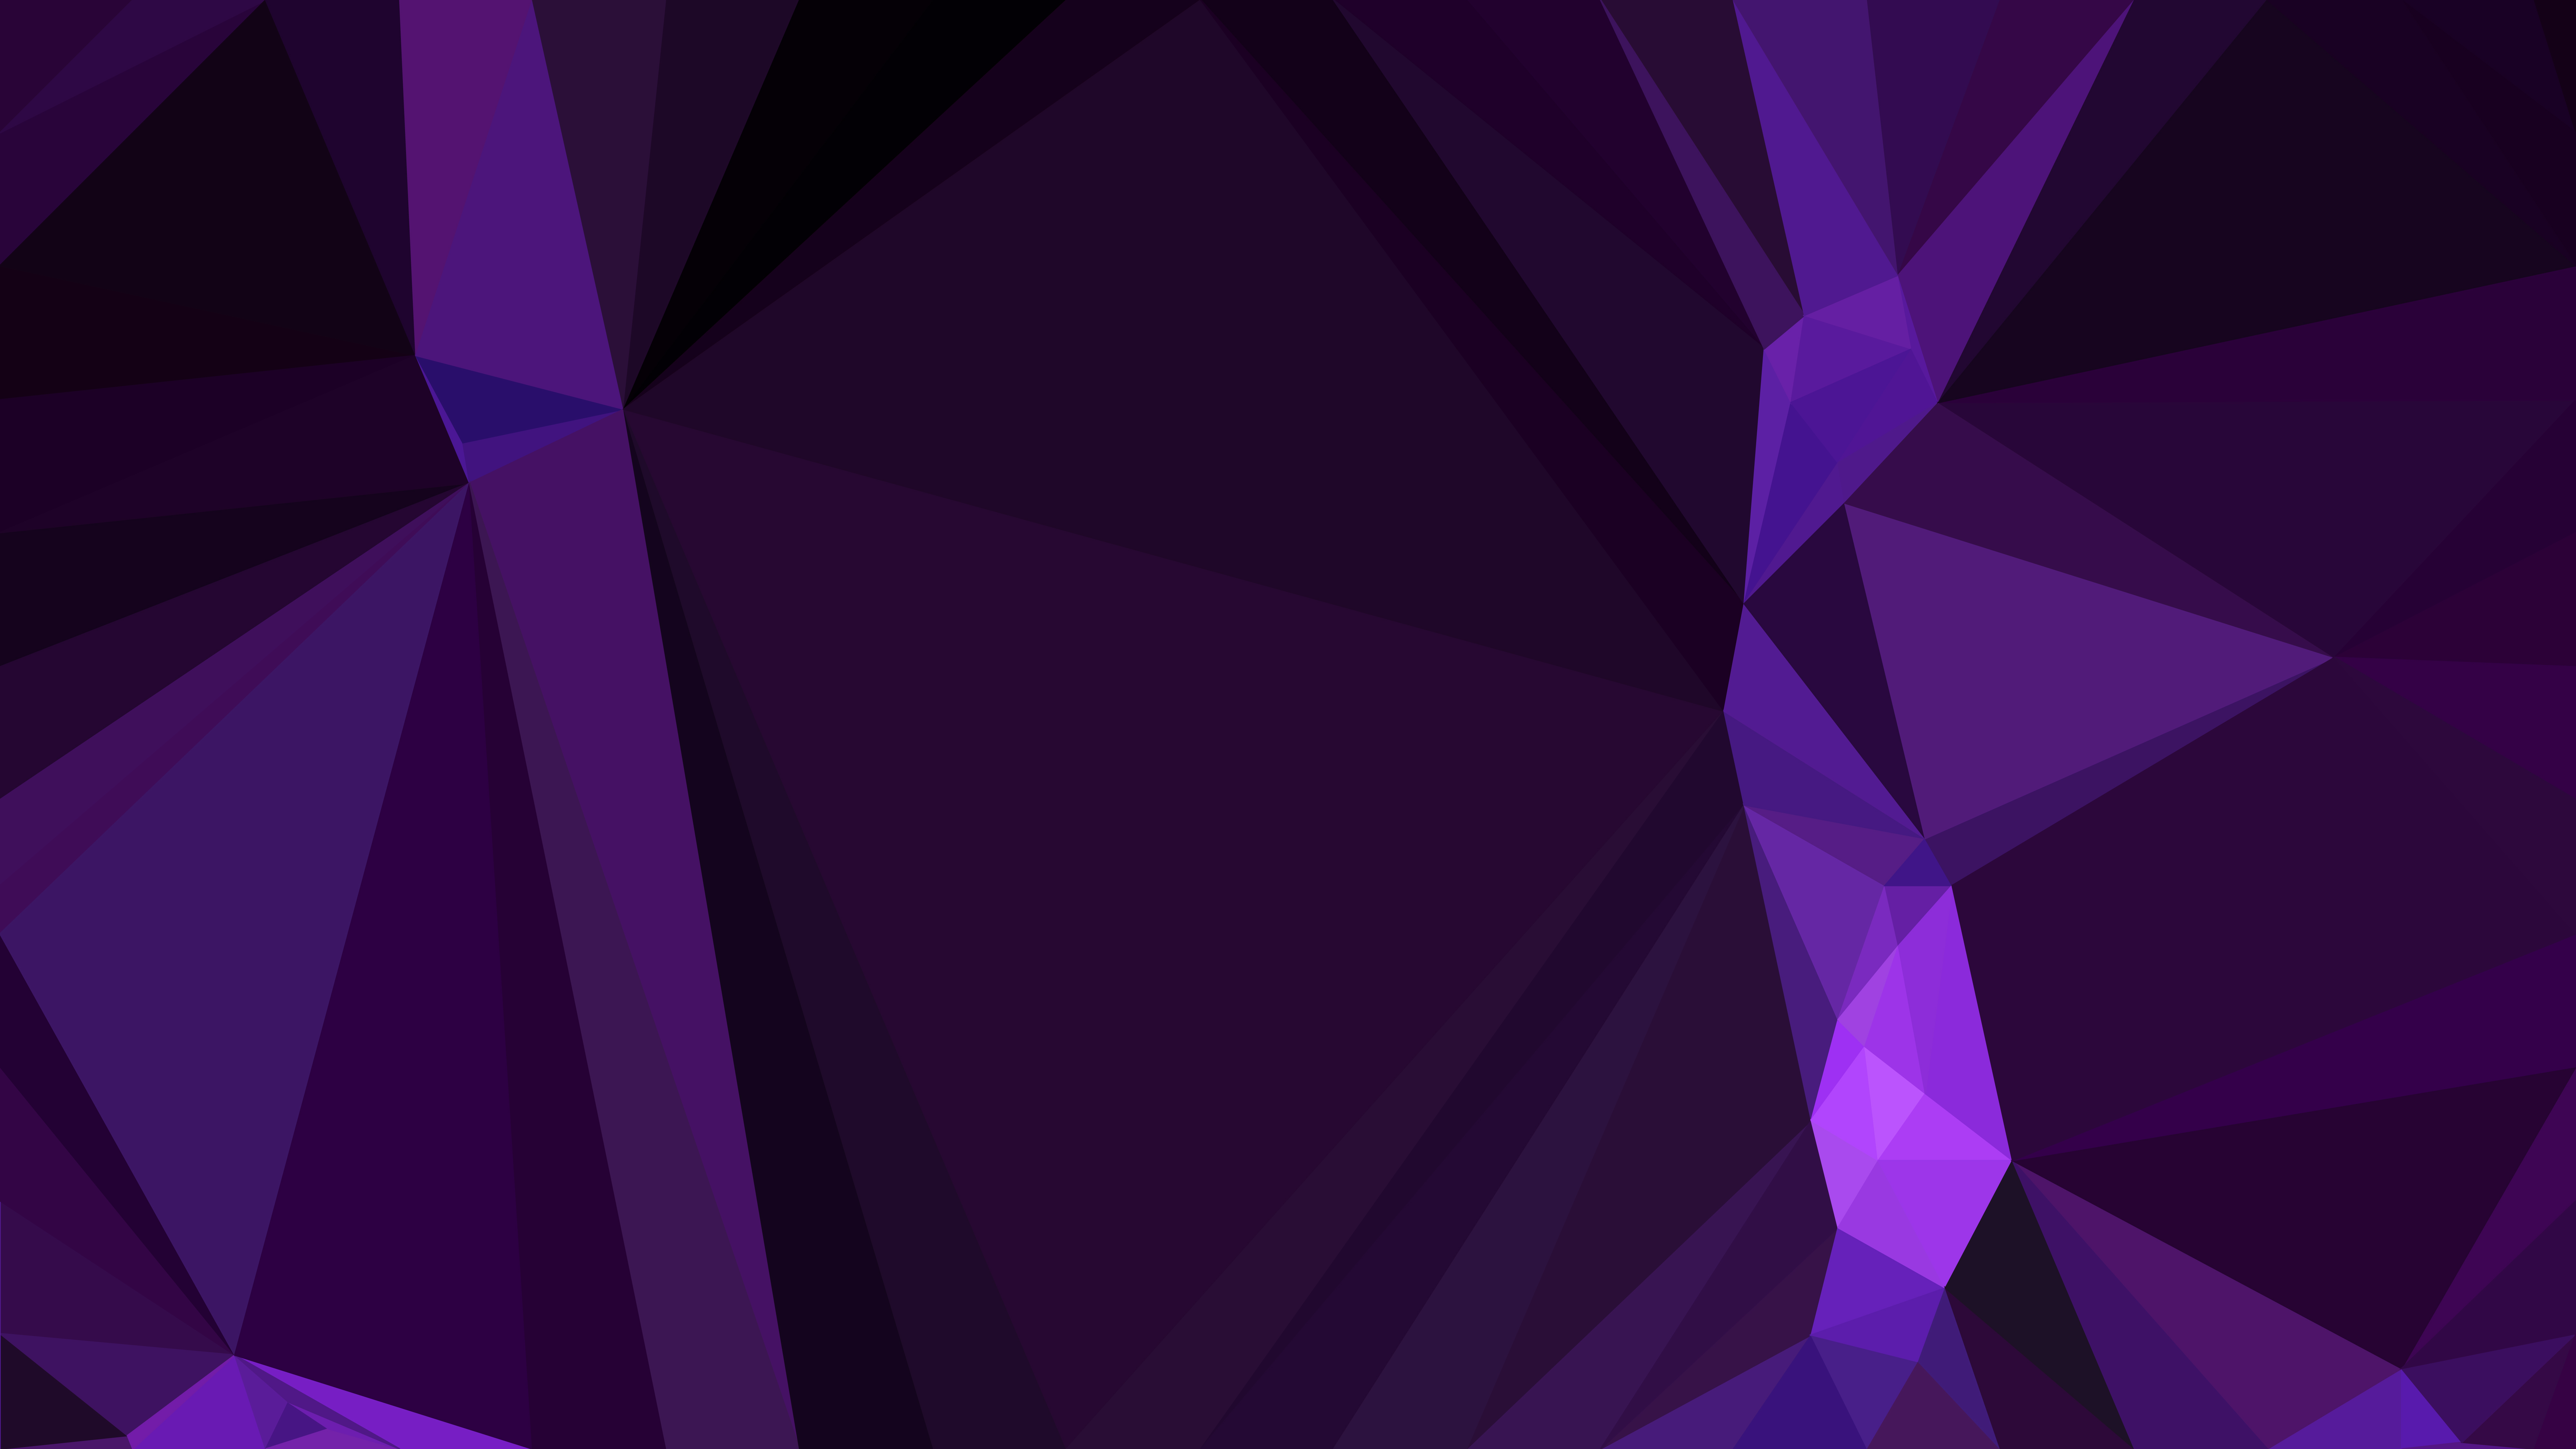 Tải miễn phí hình nền hình học tím trừu tượng (Free download abstract cool purple geometric shapes background): Bạn đang tìm kiếm một hình nền độc đáo và trừu tượng để tạo nên một không gian làm việc mới lạ và thú vị? Hãy tải miễn phí hình nền hình học tím trừu tượng để khám phá những hình khối đầy tinh tế và hiện đại.